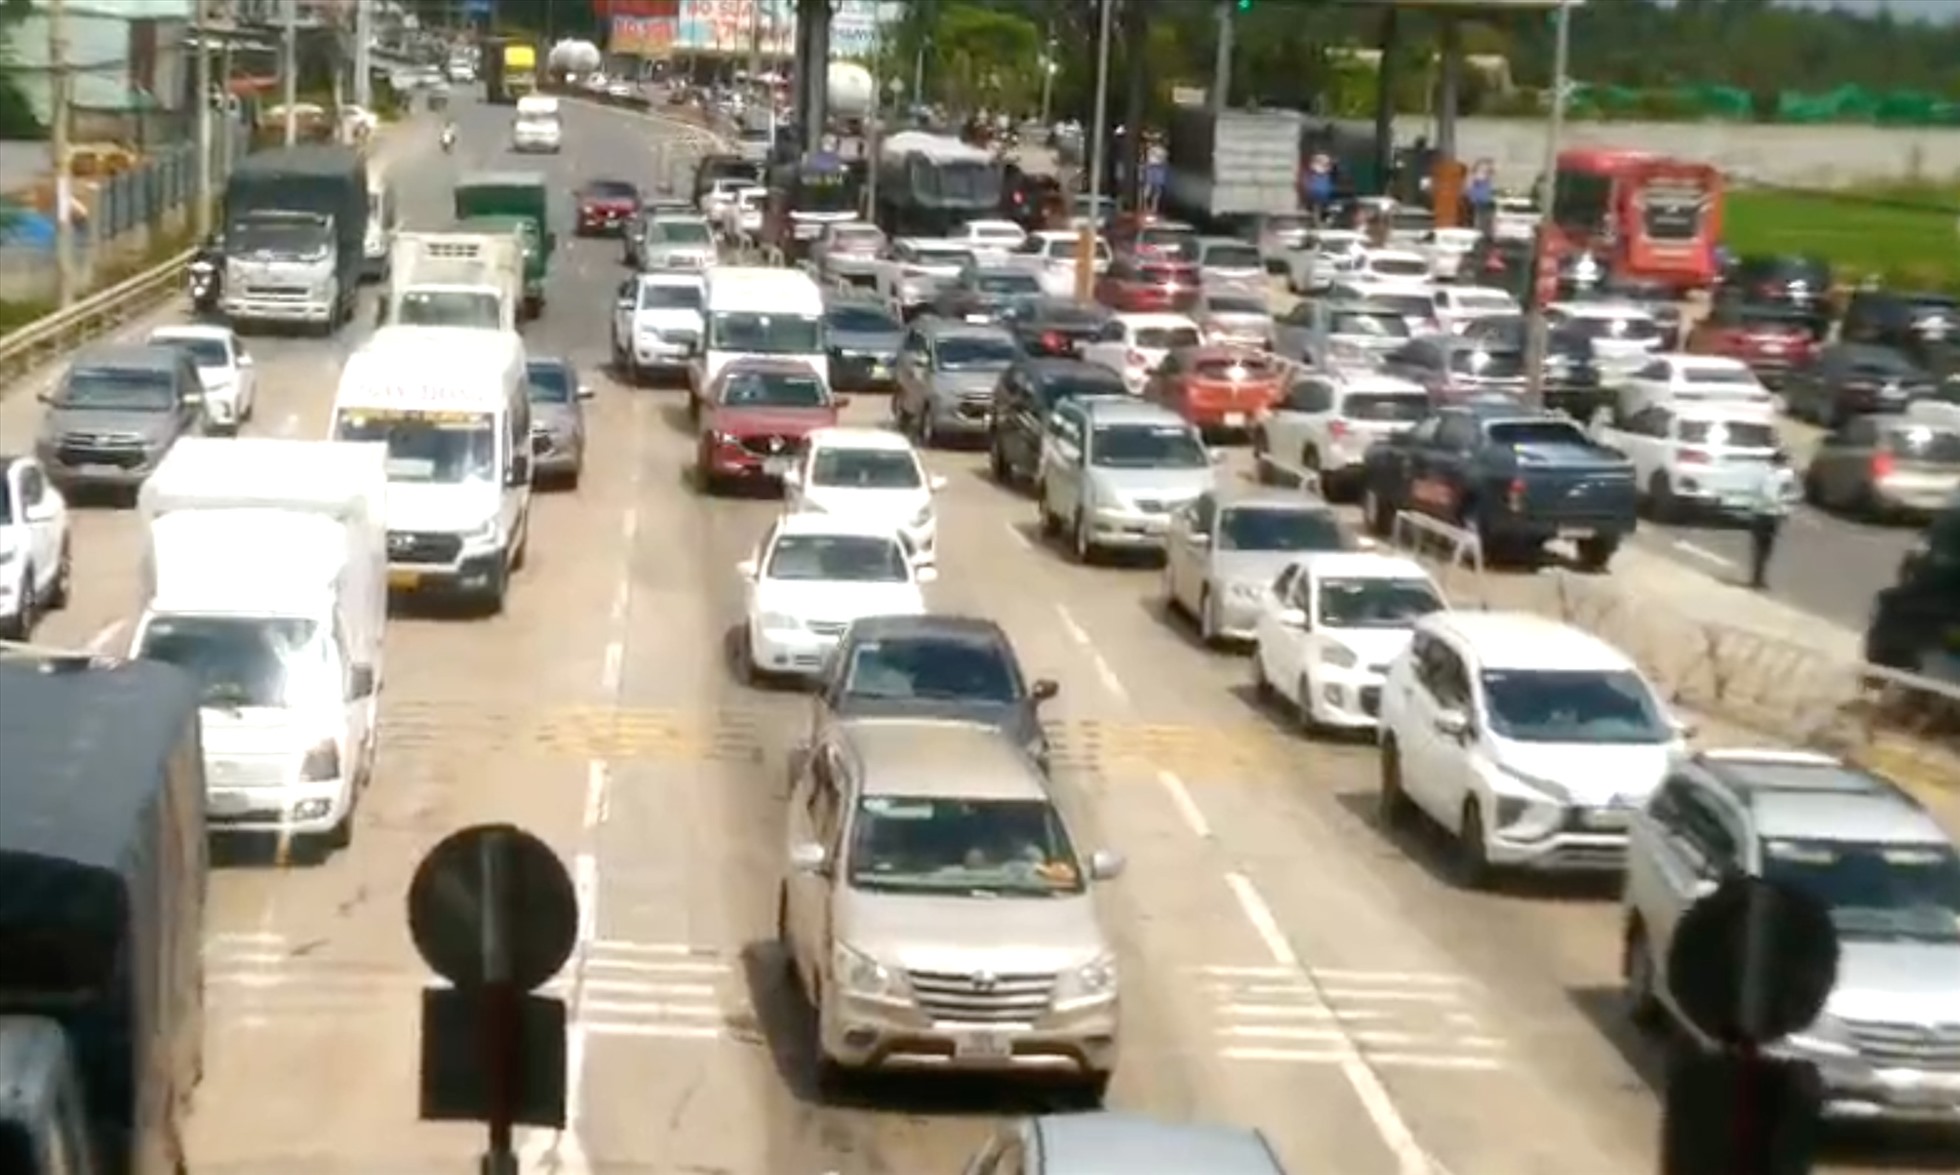 Lo ngại Quốc lộ 51 tê liệt khi mở đường xây dựng kết nối sân bay Long Thành